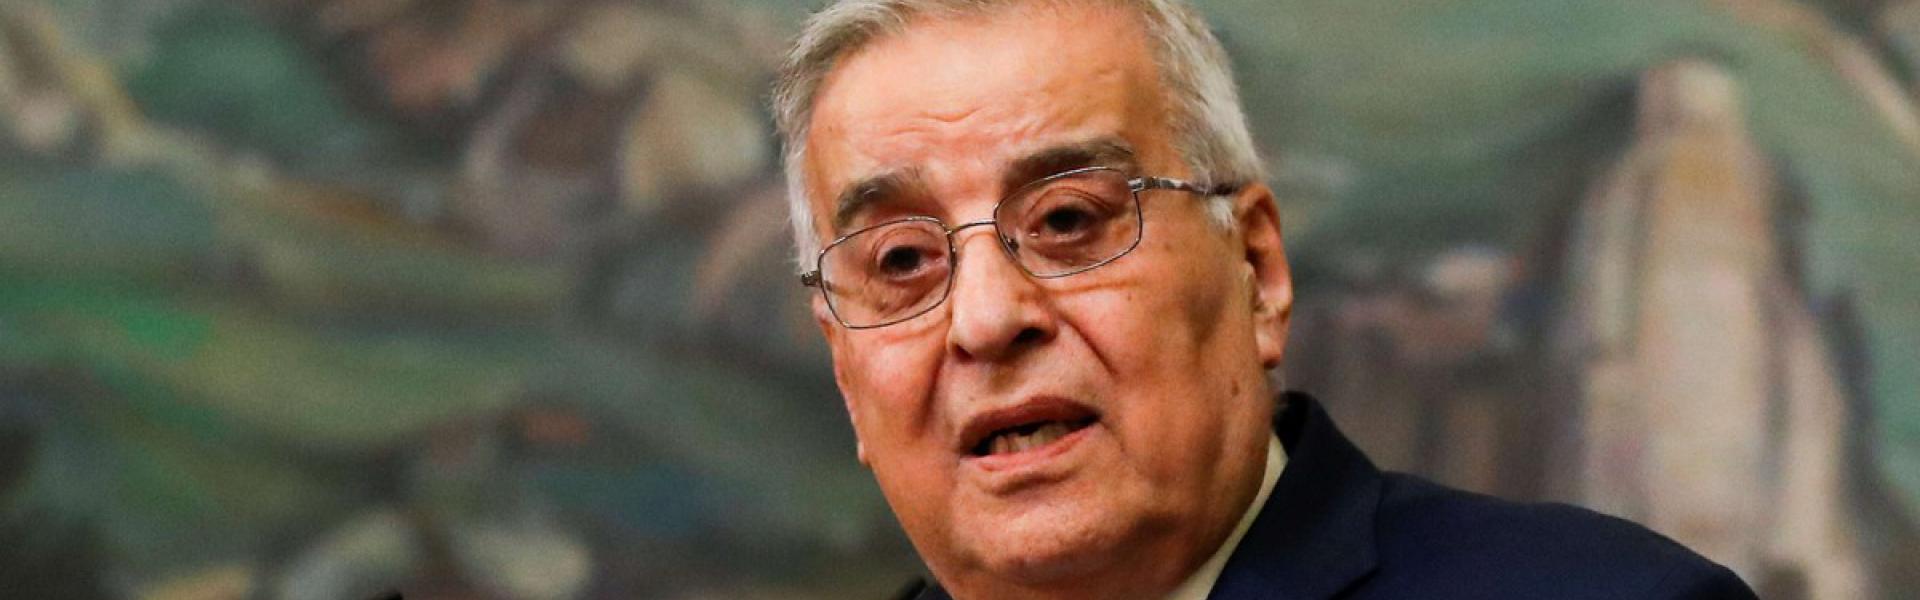 وزير الخارجية اللبناني يوجه تحذيرا لمفوضية شؤون اللاجئين